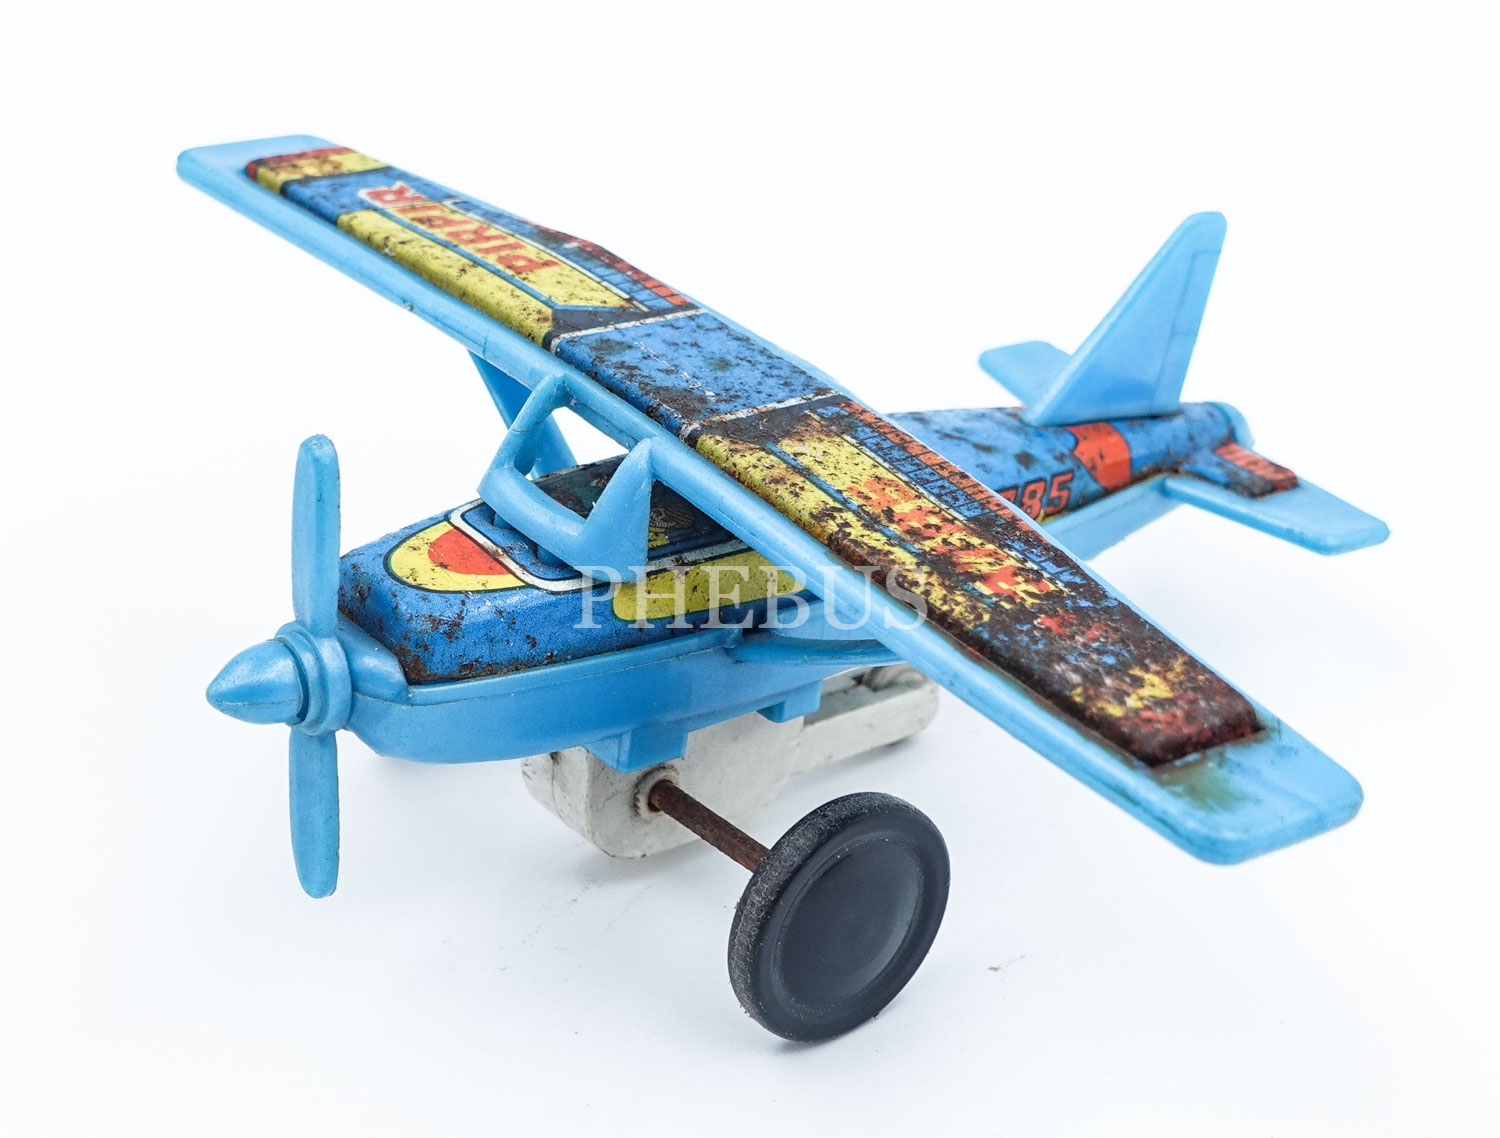 Yerli malı Alasya marka ´´ PIRPIR P-3785´´ model teneke ve plastik´ten mamul uçak, 15x12x5 cm...